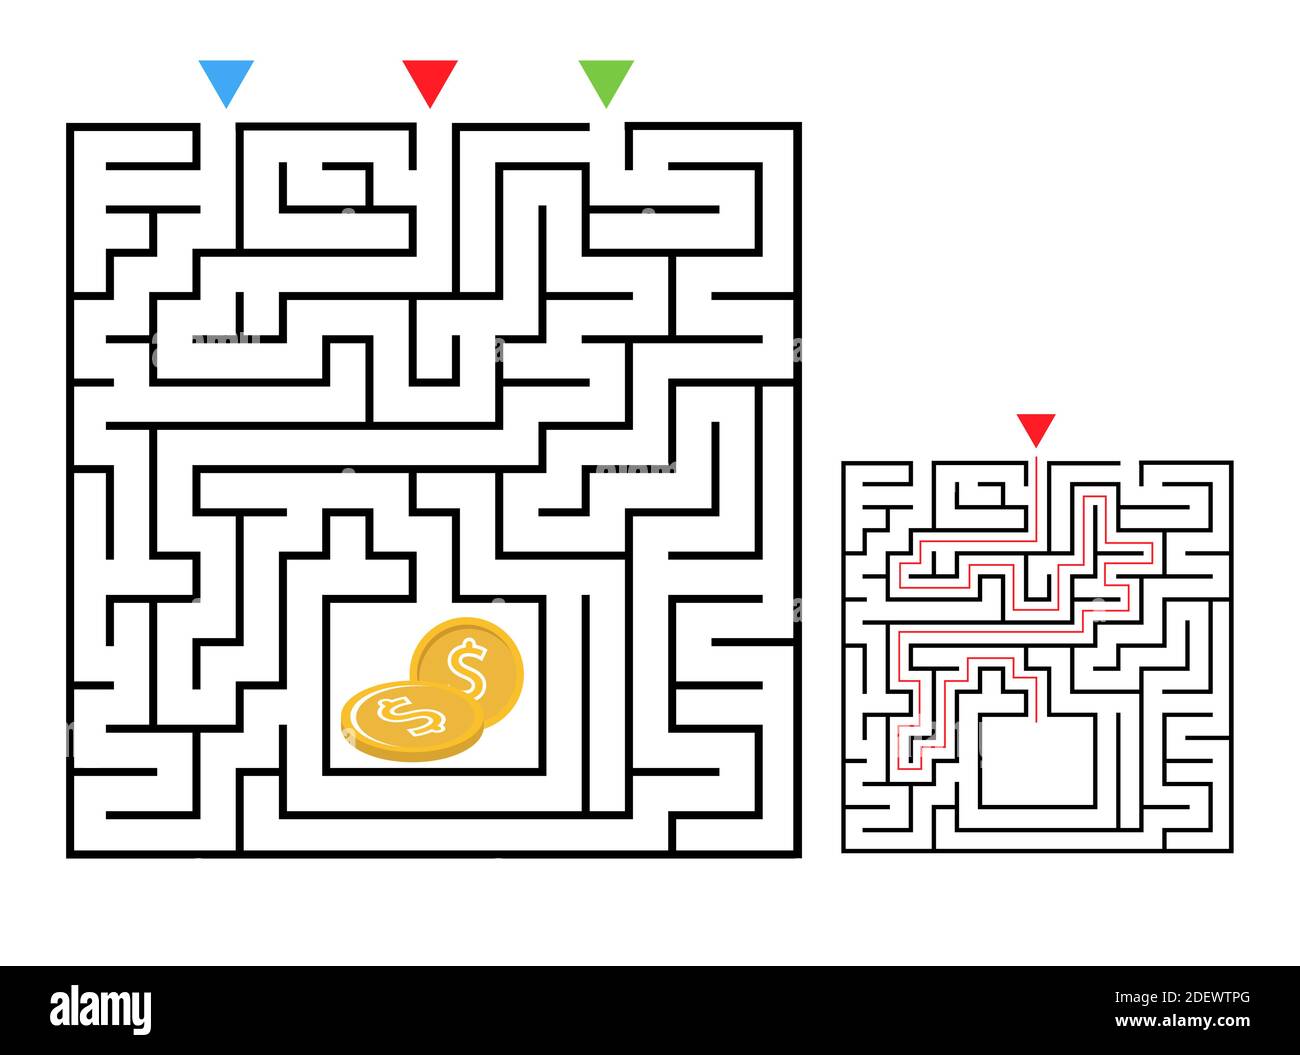 Labirinto quadrato gioco labirinto per bambini. Logica labirintica. Tre ingressi e una strada a destra per andare. Immagine piatta vettoriale Illustrazione Vettoriale